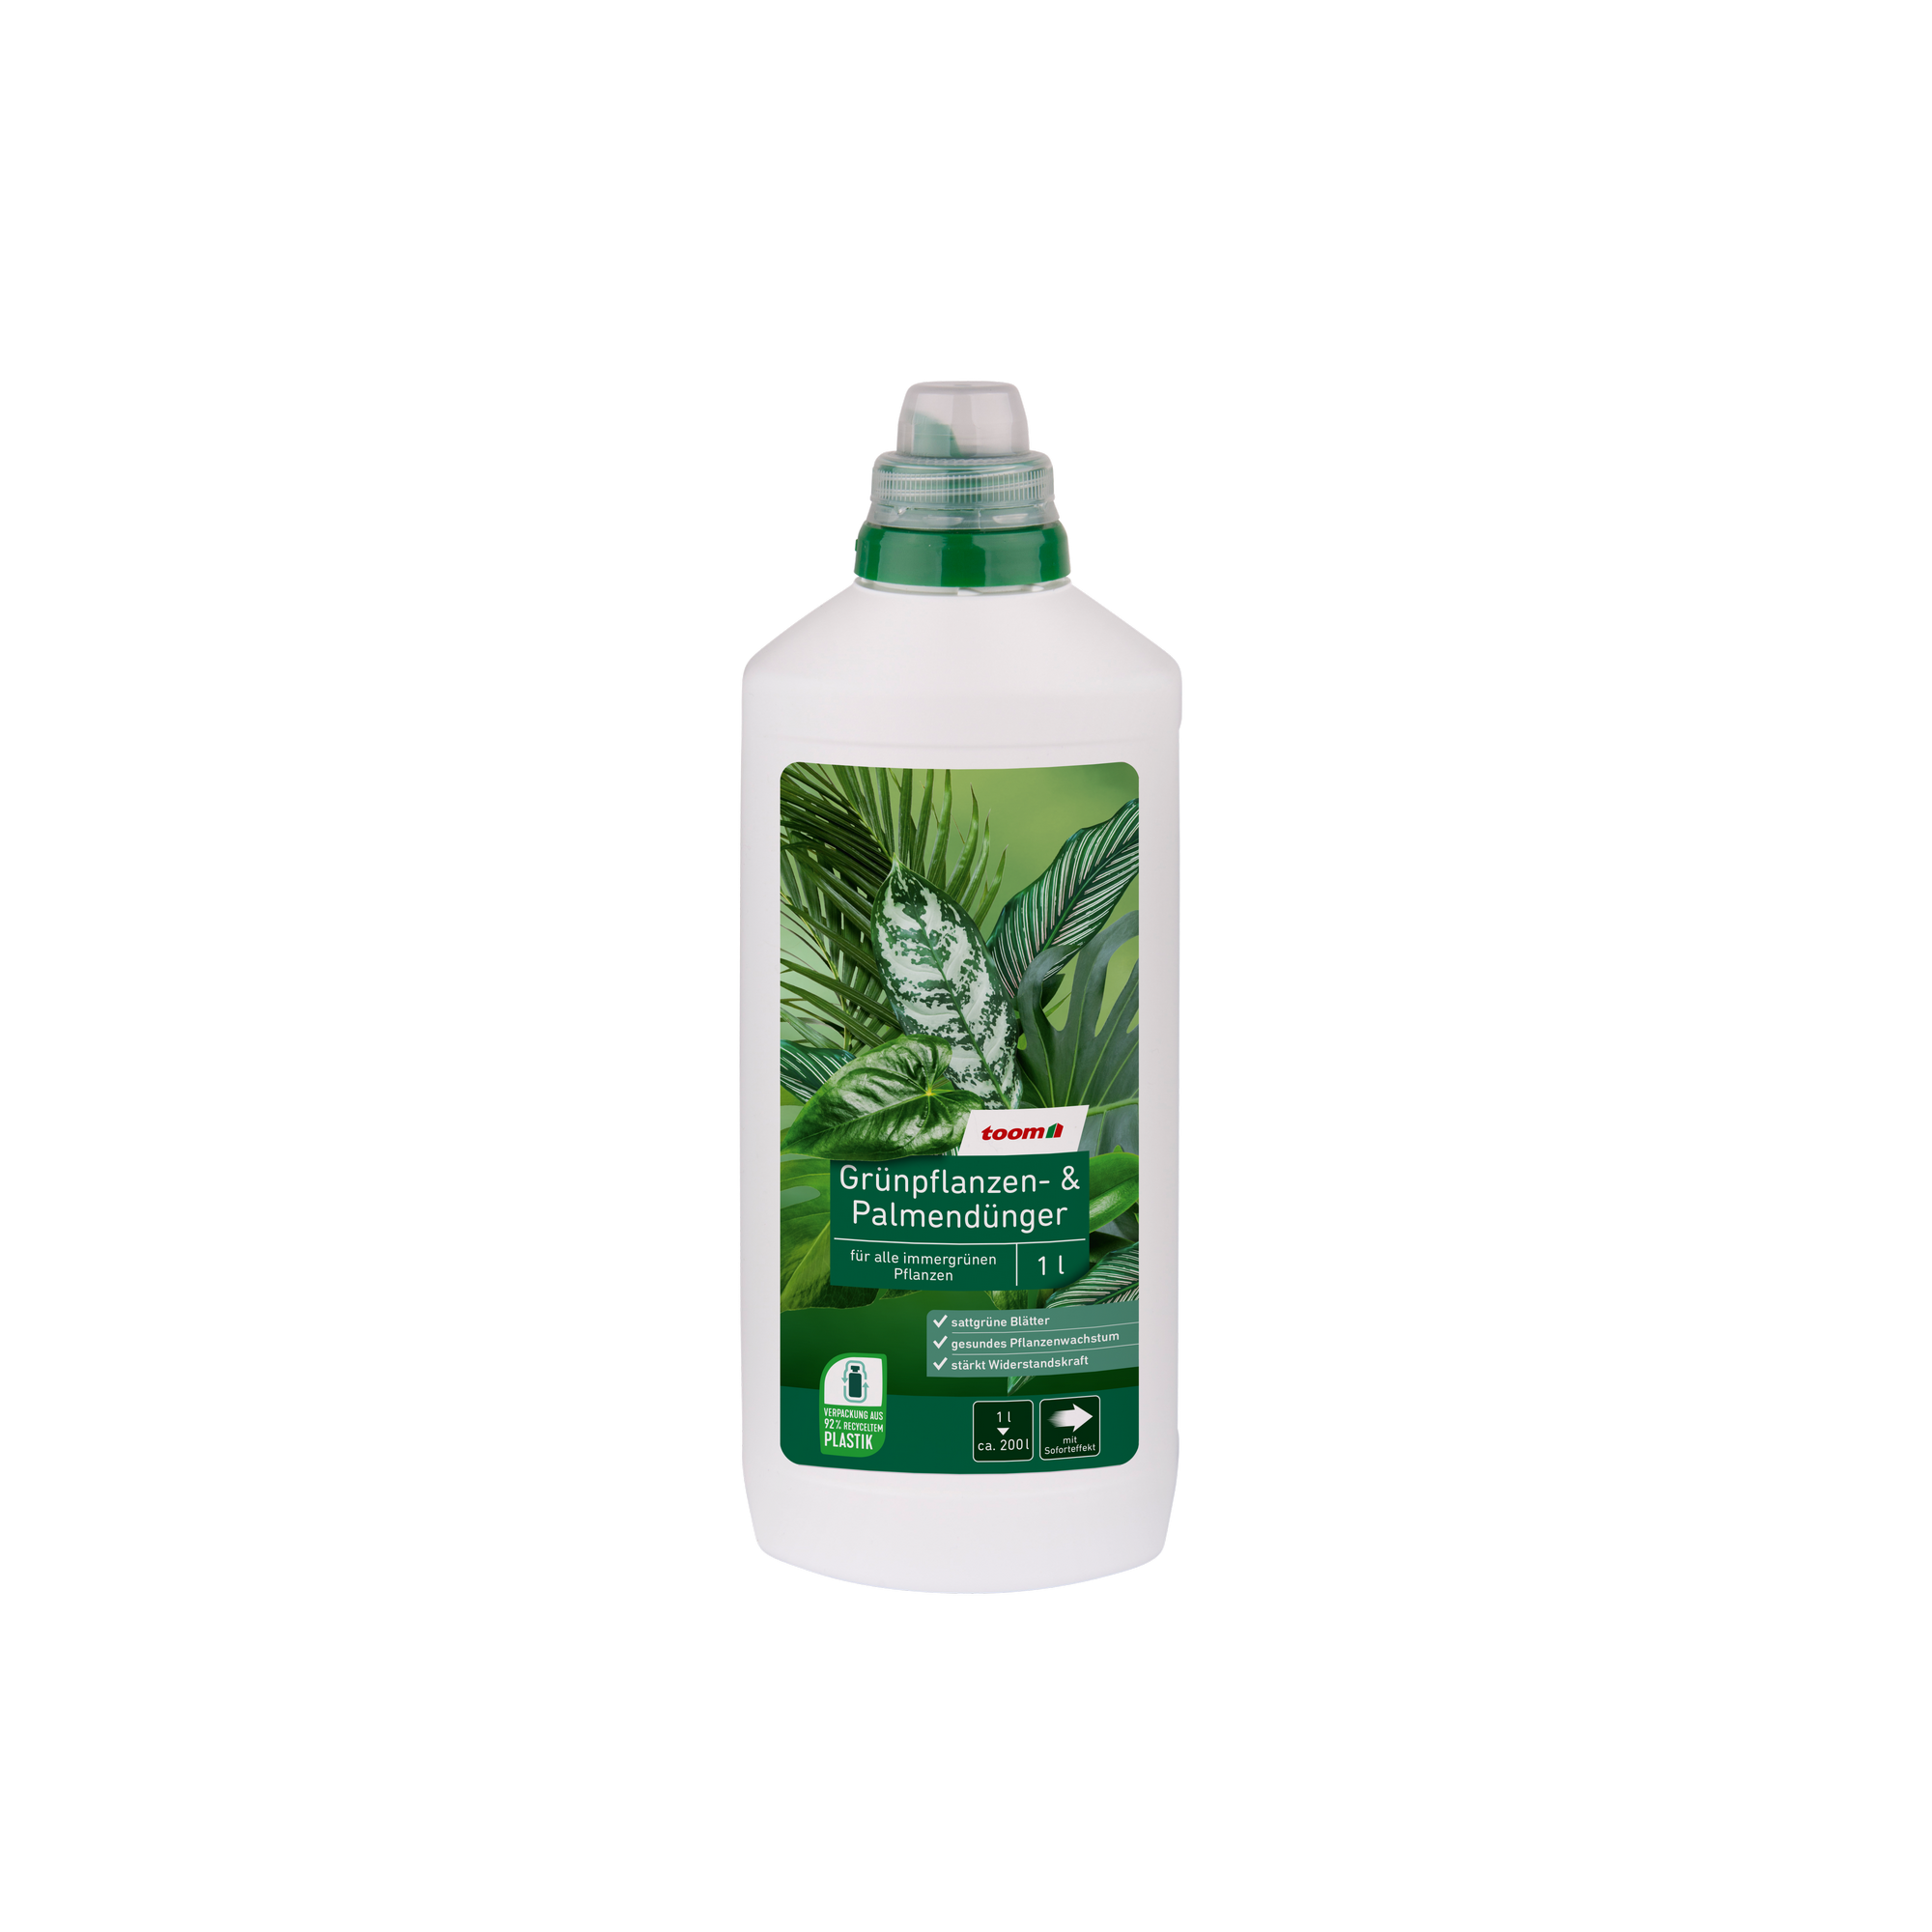 Grünpflanzen- und Palmendünger 1 l + product picture